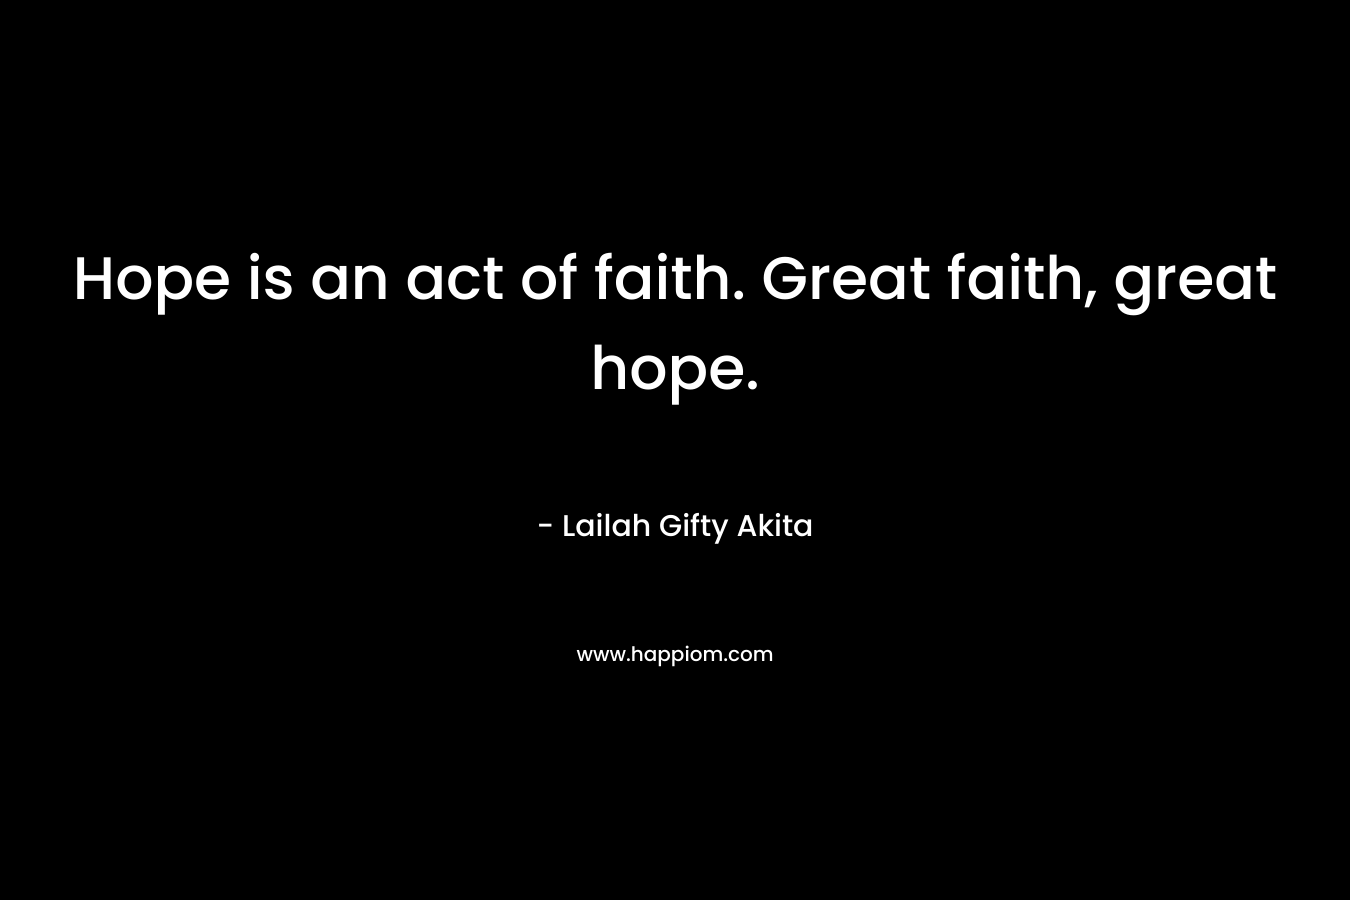 Hope is an act of faith. Great faith, great hope.